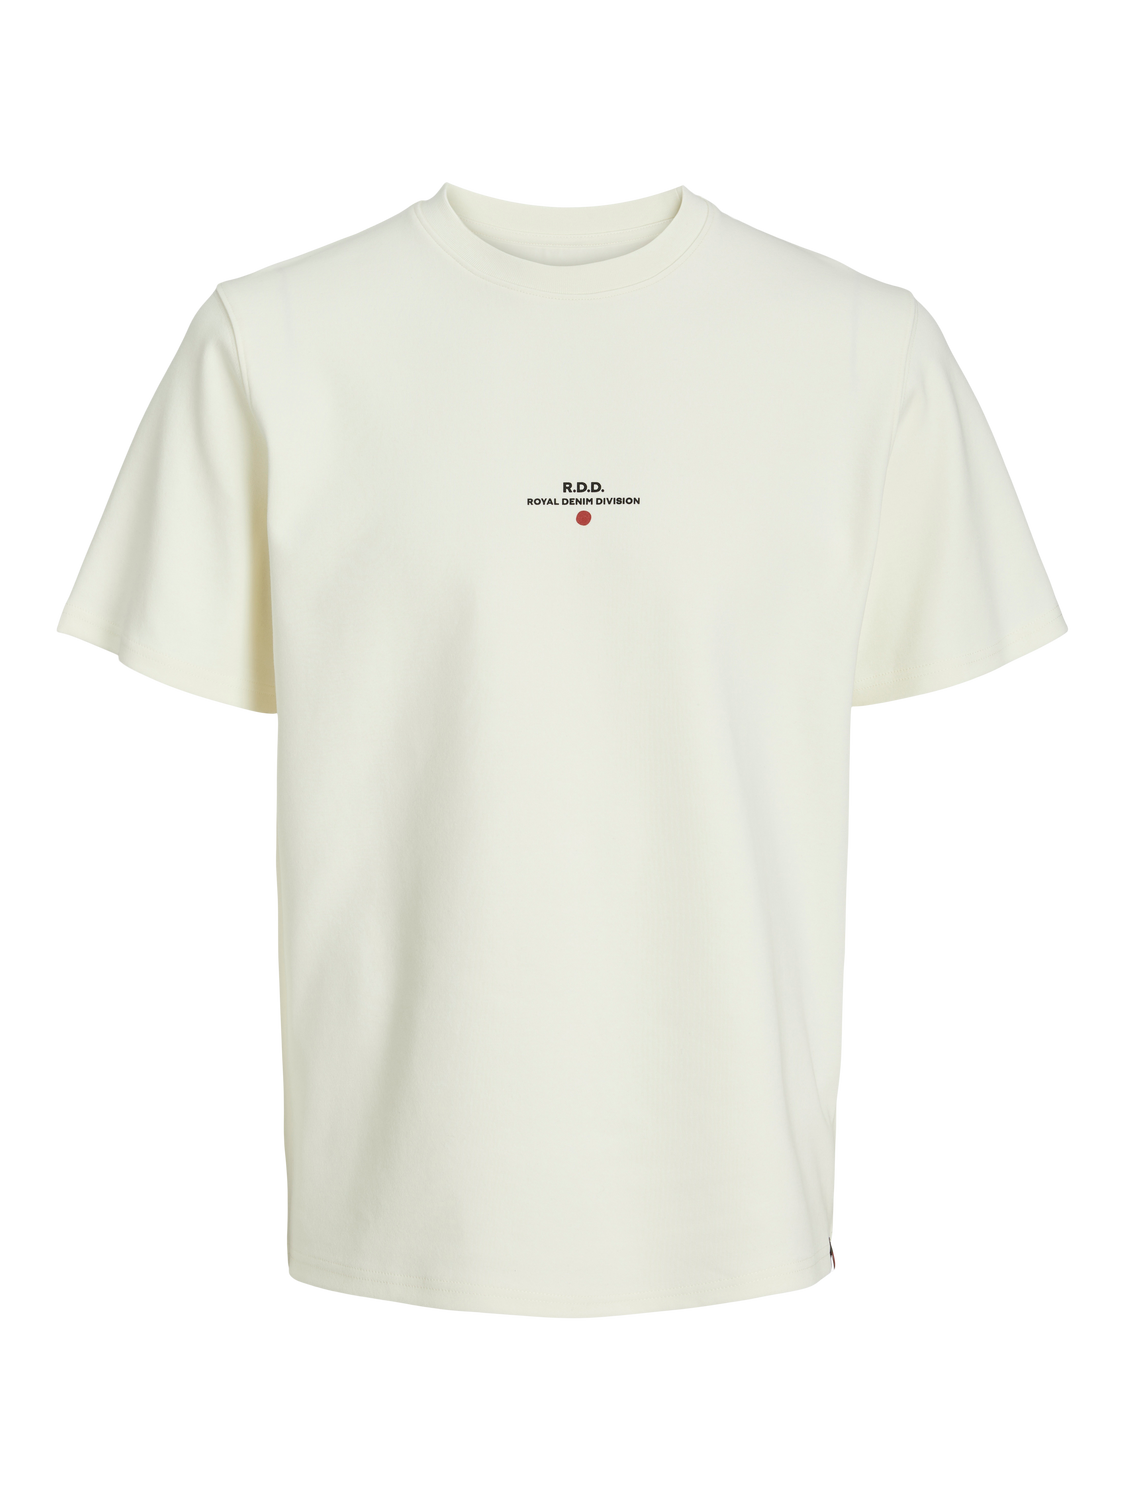 RDDLUCA T-Shirt - Egret